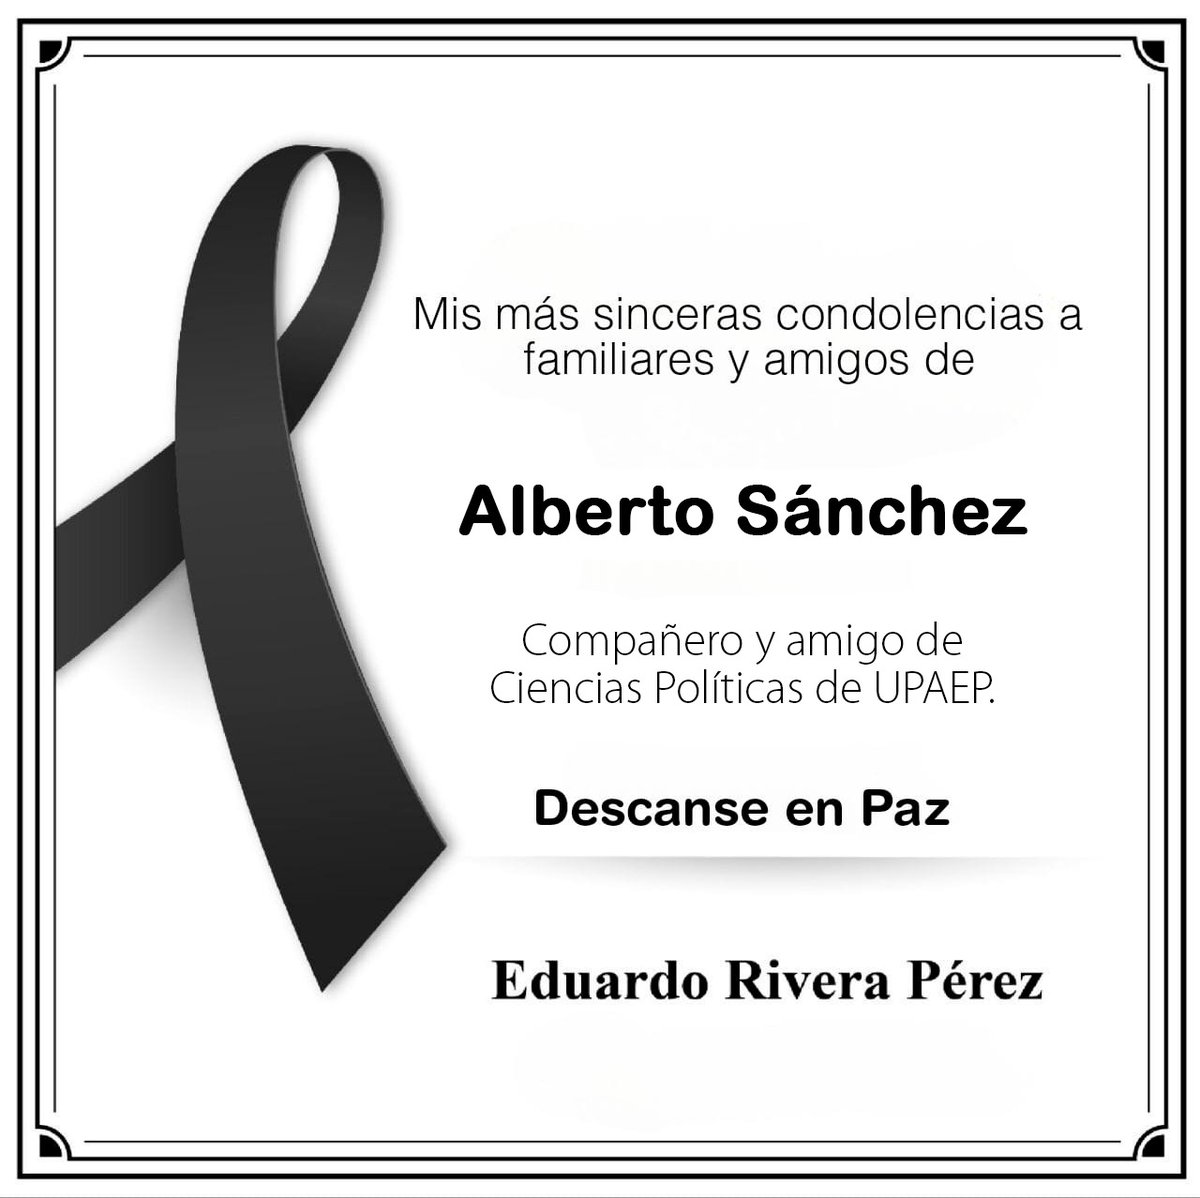 Lamento profundamente la pérdida de mi compañero y amigo de Ciencias Políticas en la UPAEP, Alberto Sánchez. Mi solidaridad y pensamientos con sus familiares y amigos en estos momentos difíciles. Que descanse en paz.